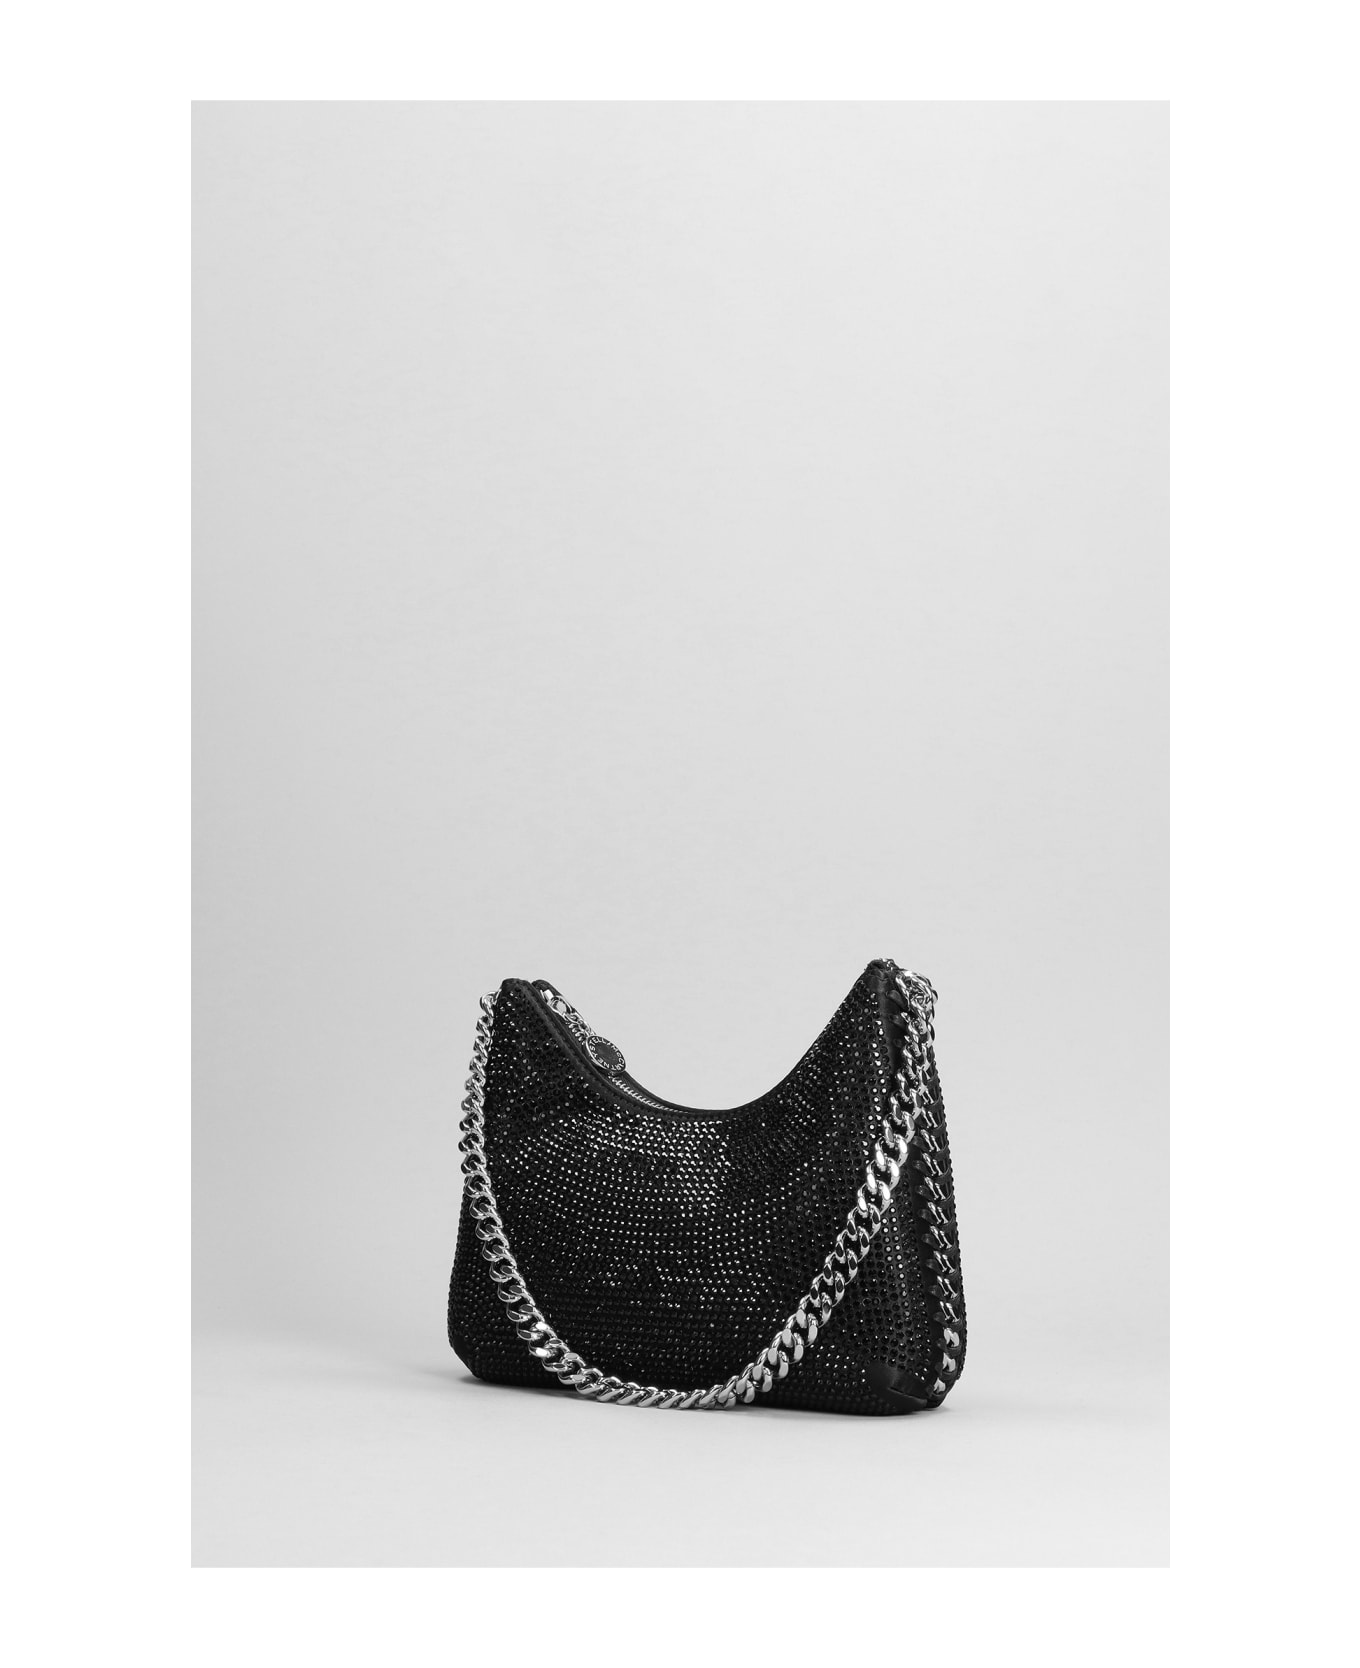 Stella McCartney Shoulder Bag In Black Polyester - black